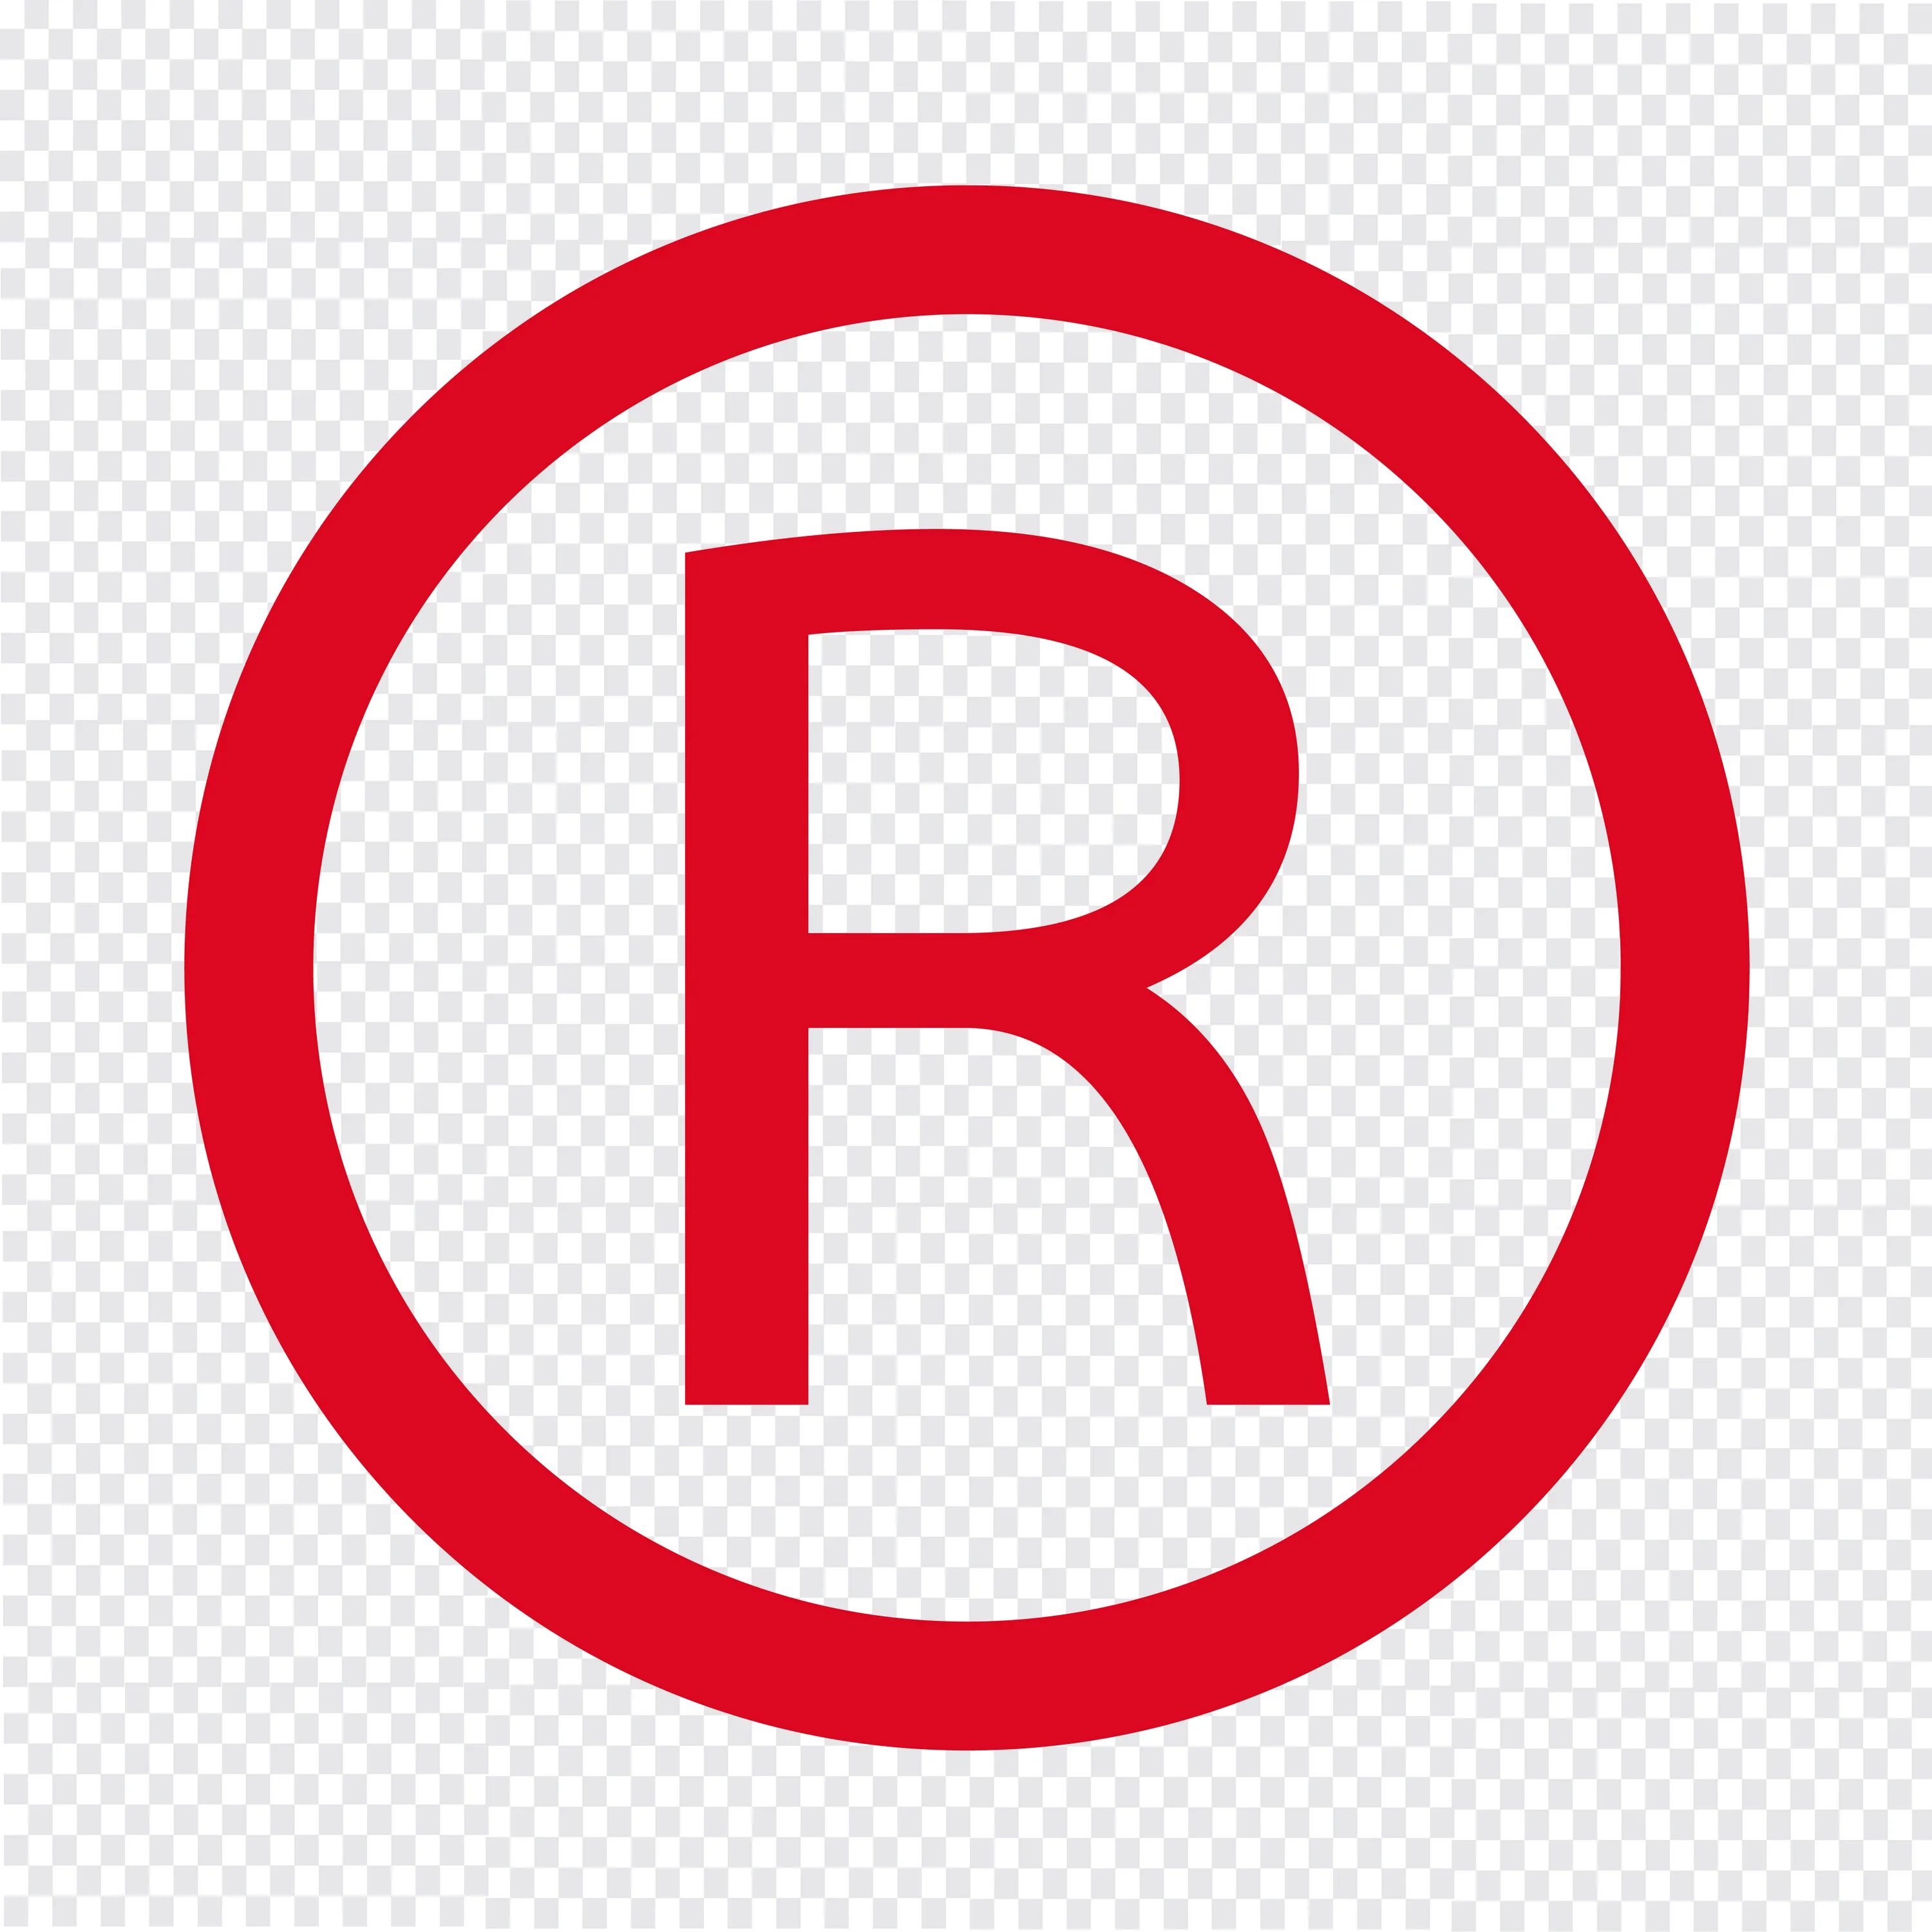 R quality. Буква r в кружочке. Знак торговой марки. Значок r. Знак зарегистрированной торговой марки.